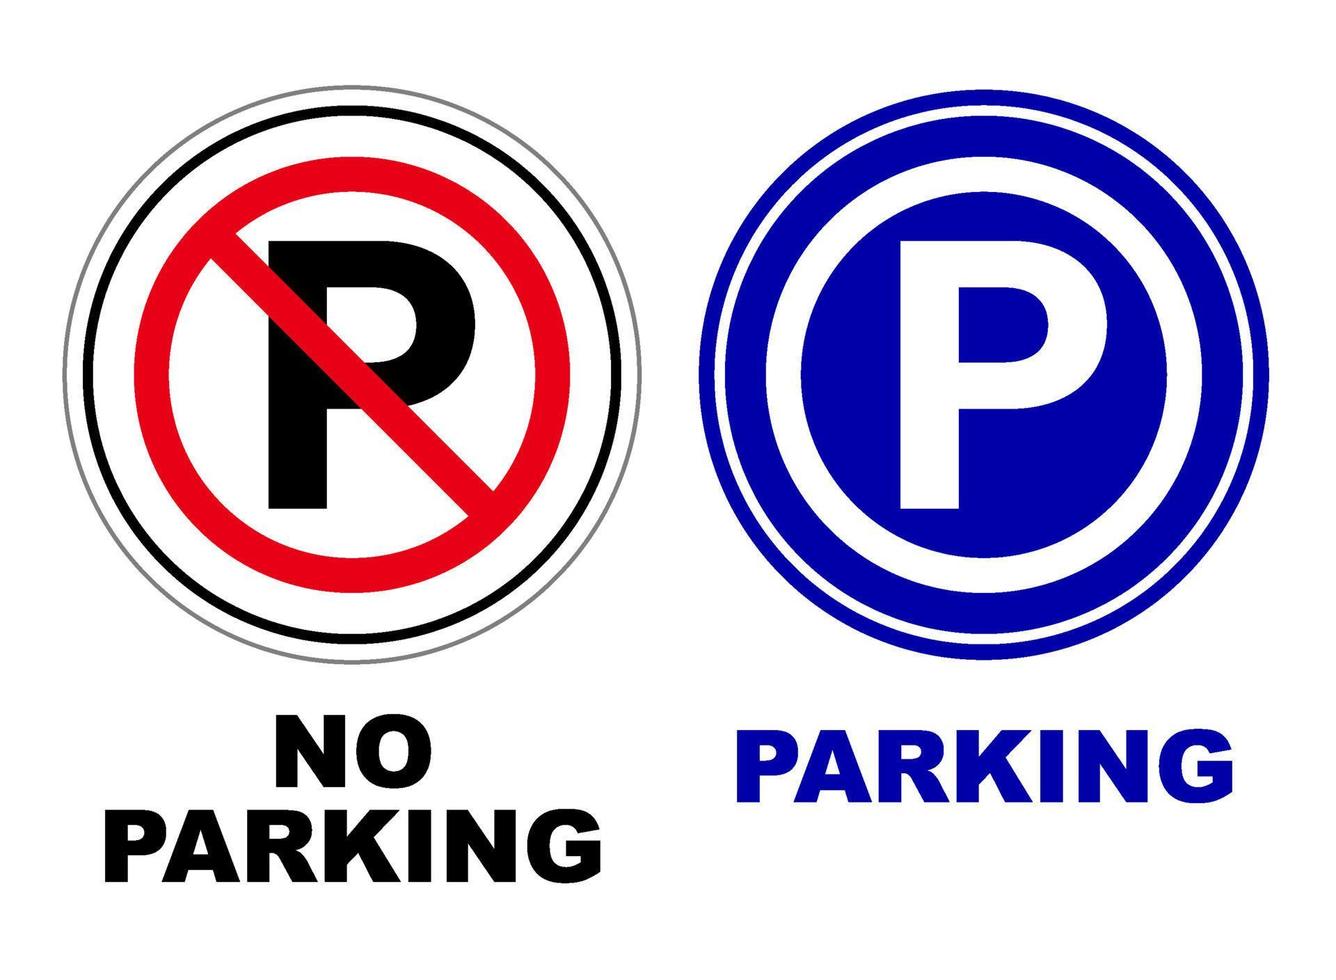 estacionamiento prohibido firmar conjunto haz imprimible redondeado modelo plano diseño aislado público firmar vector